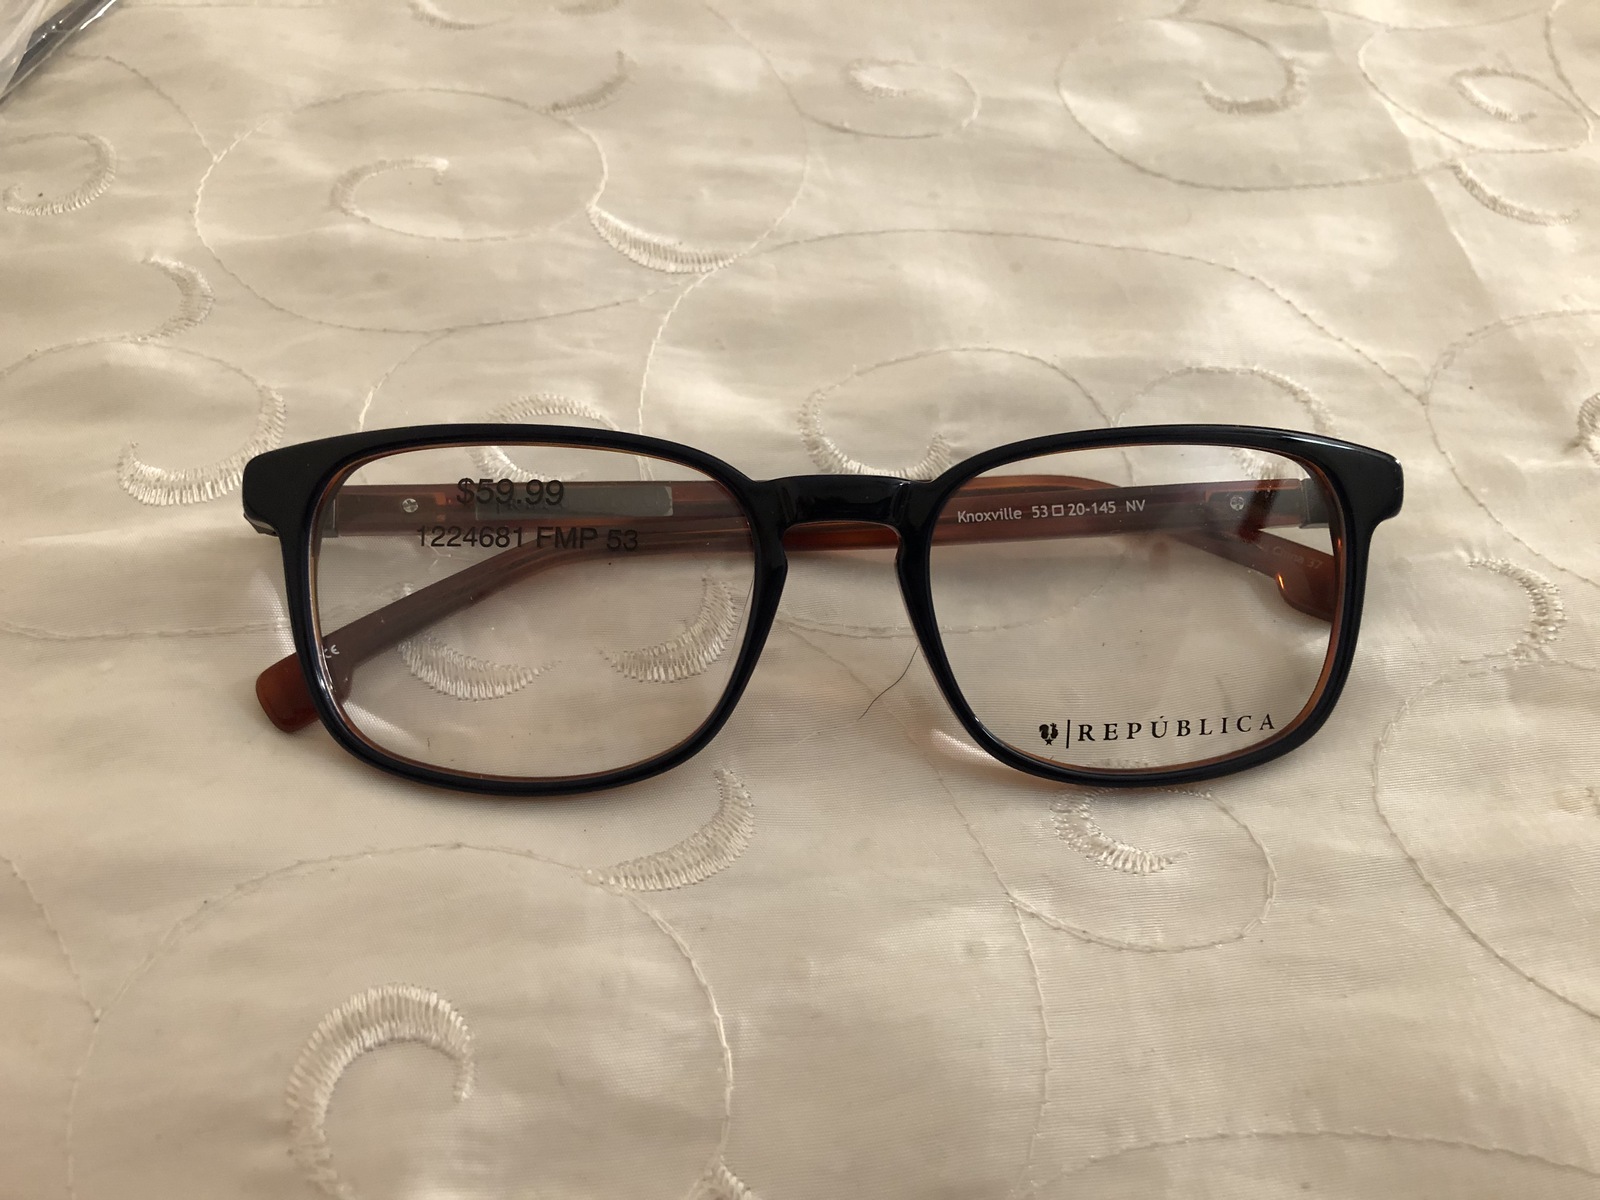 Republica Knoxville Women's Eyeglass Frames - $49.95